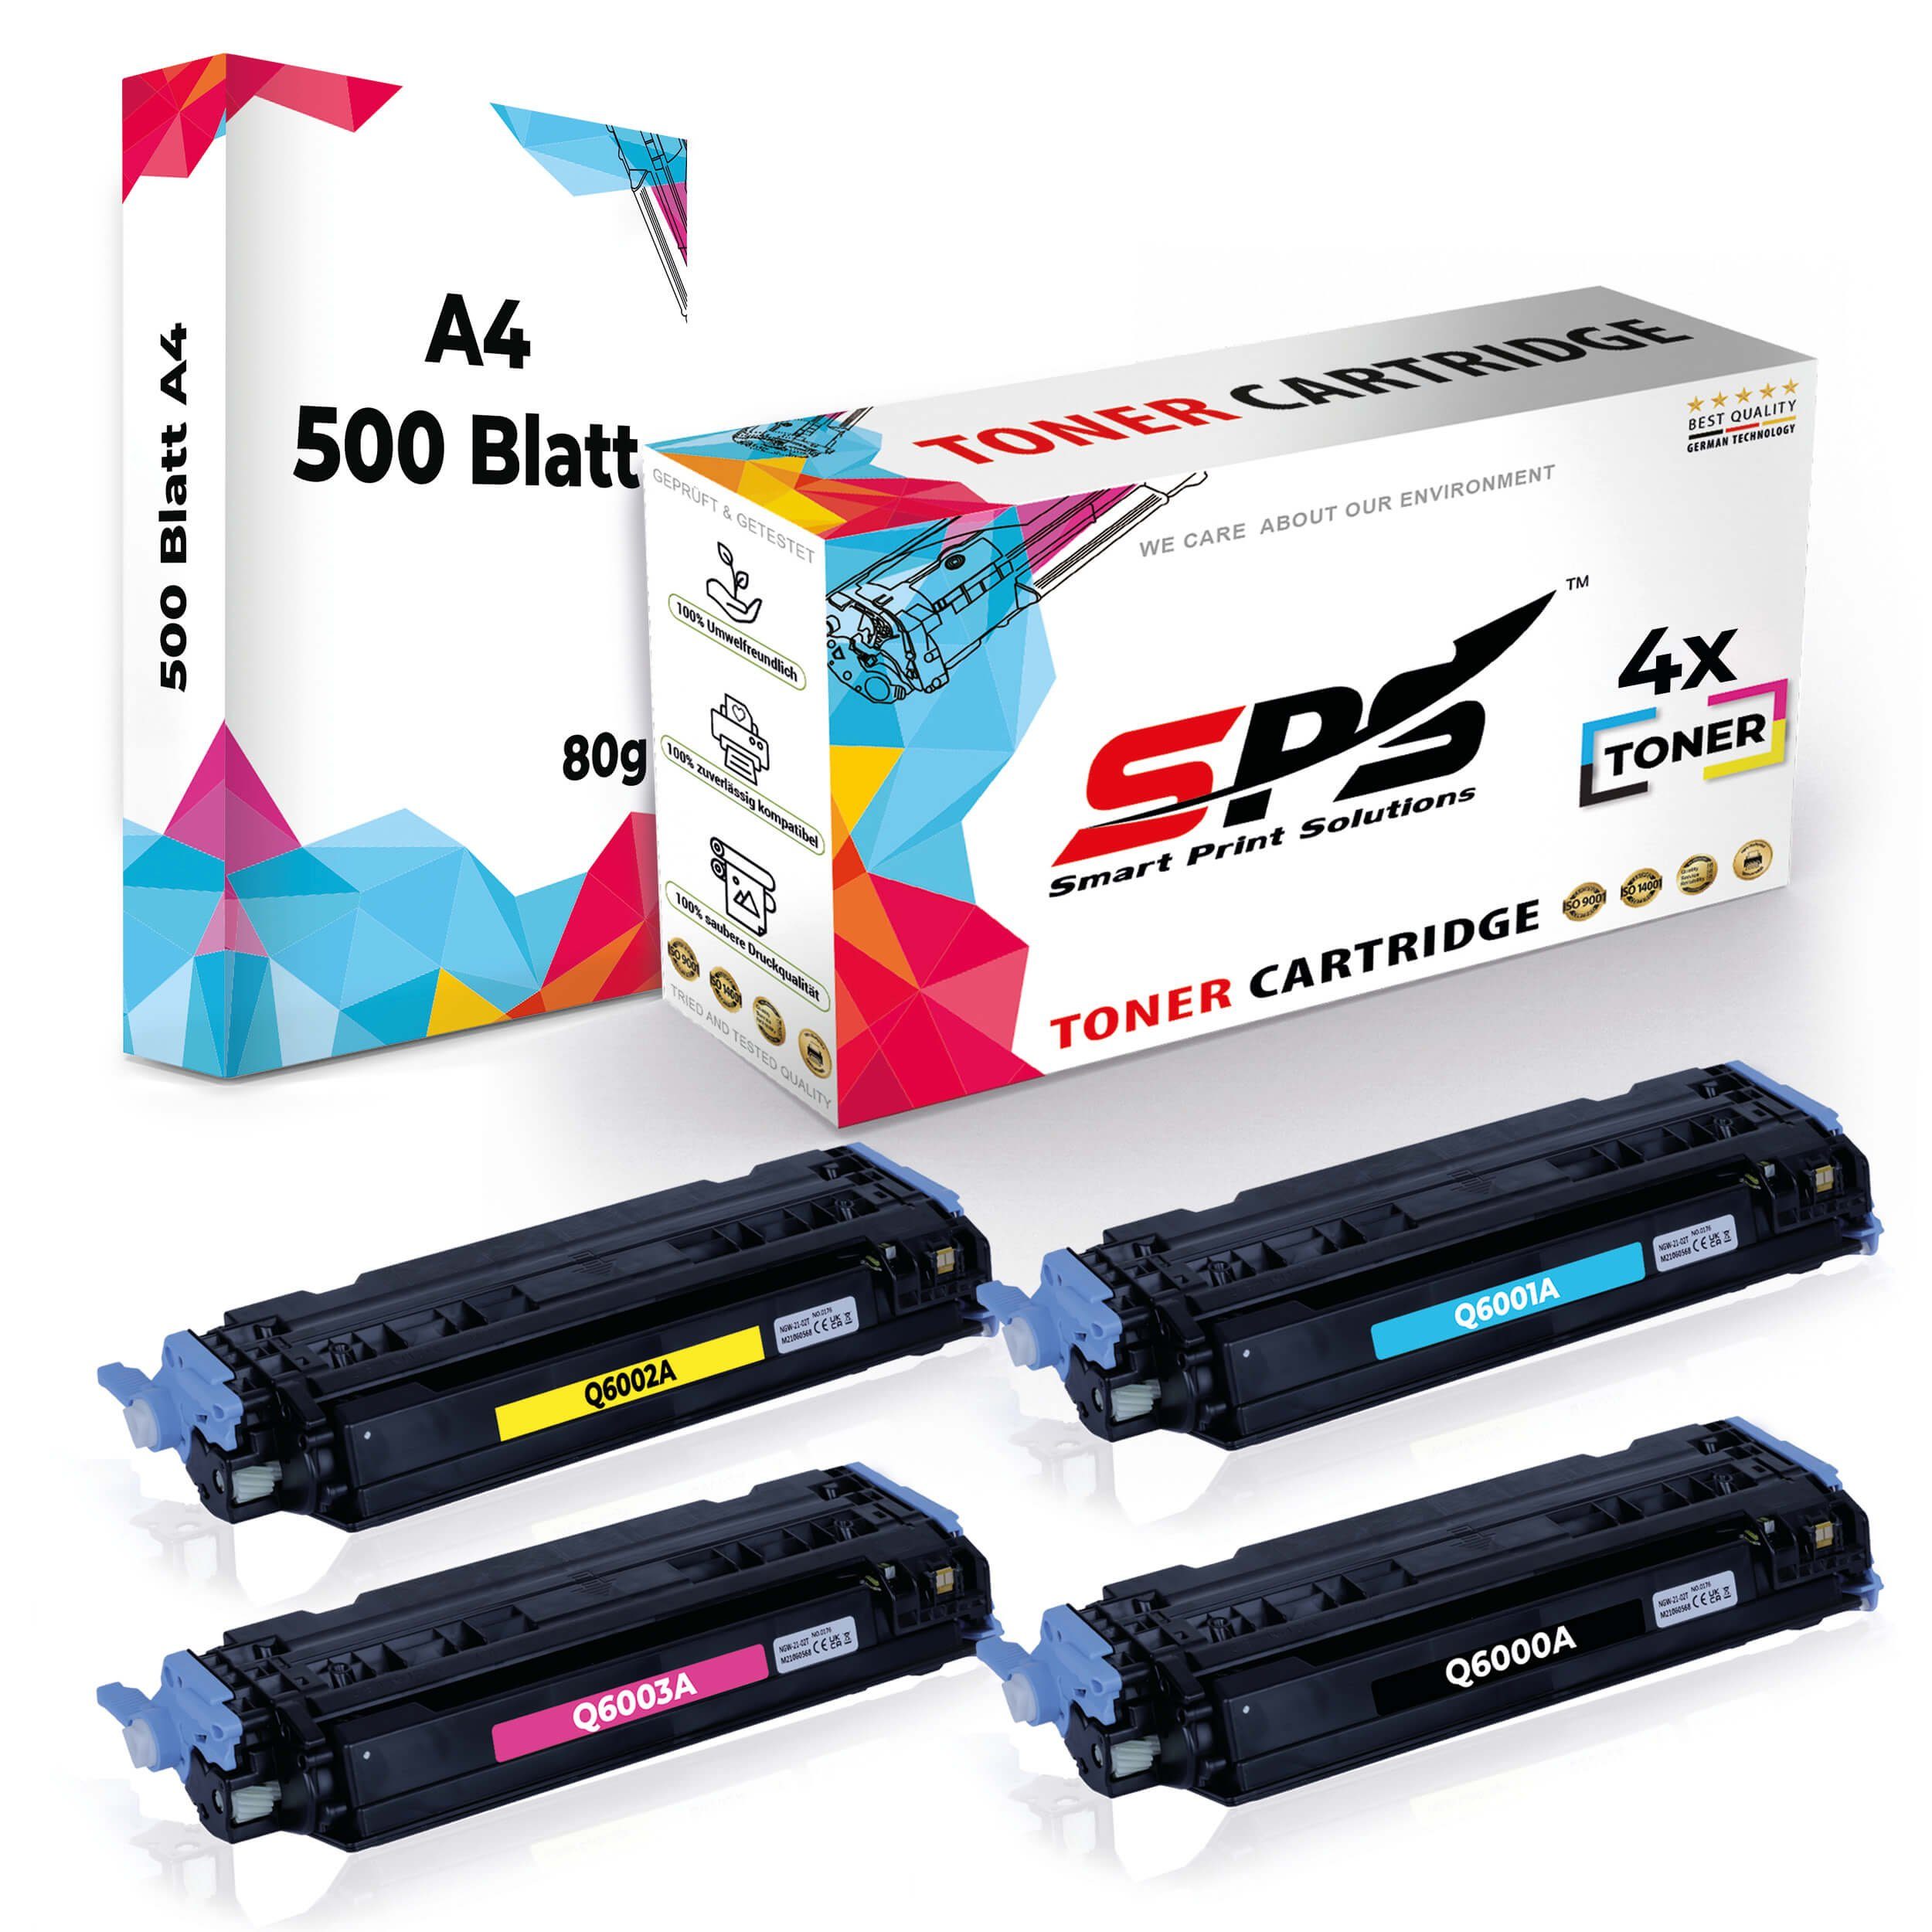 SPS Tonerkartusche Druckerpapier 4x + Druckerpapier) A4 Multipack 4x Kompatibel, (5er A4 Set Pack, Toner,1x